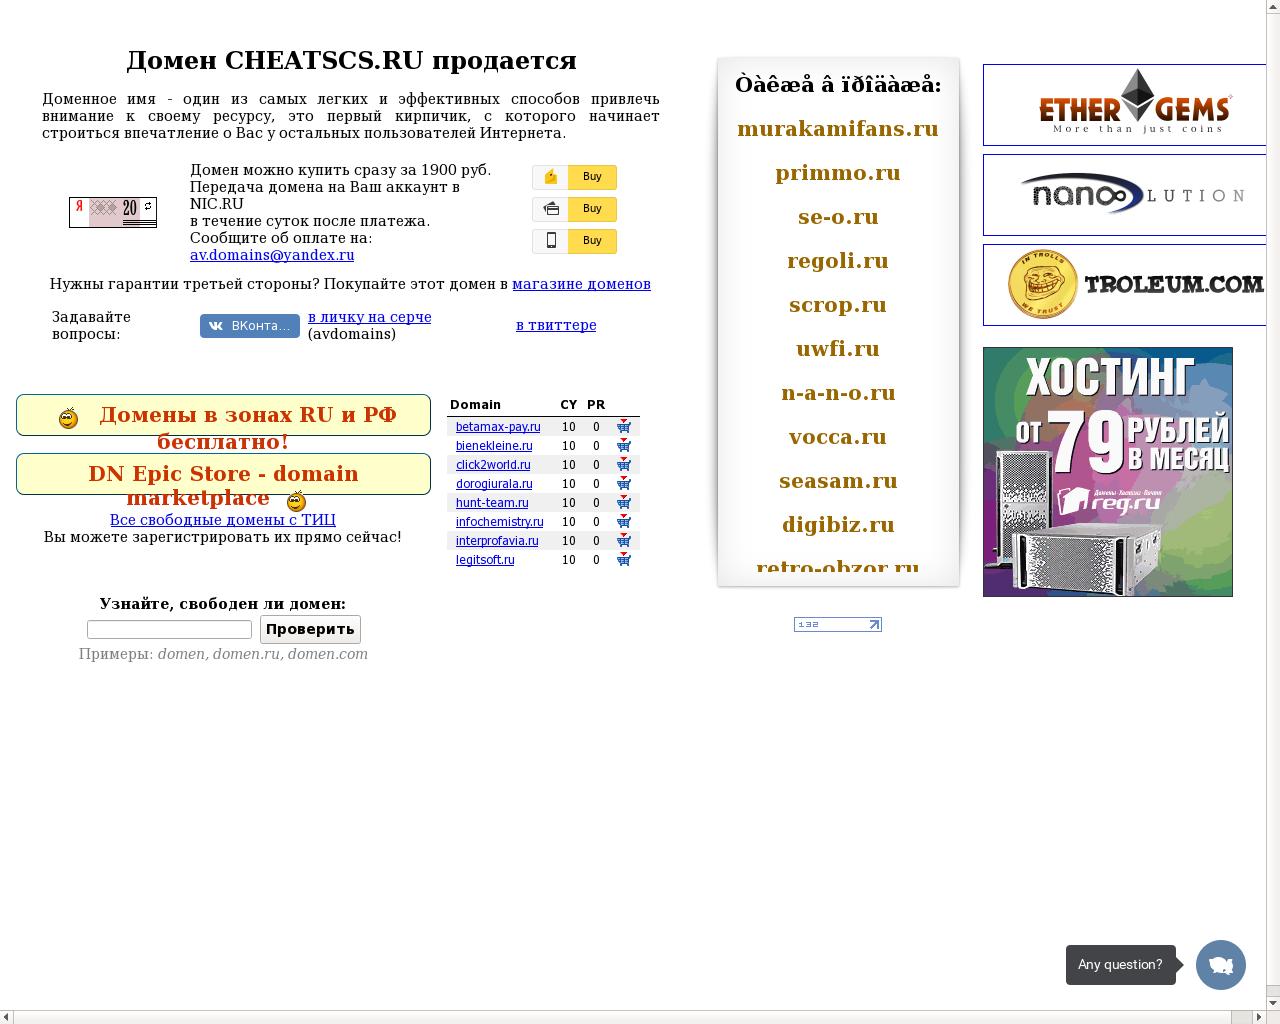 Изображение сайта cheatscs.ru в разрешении 1280x1024